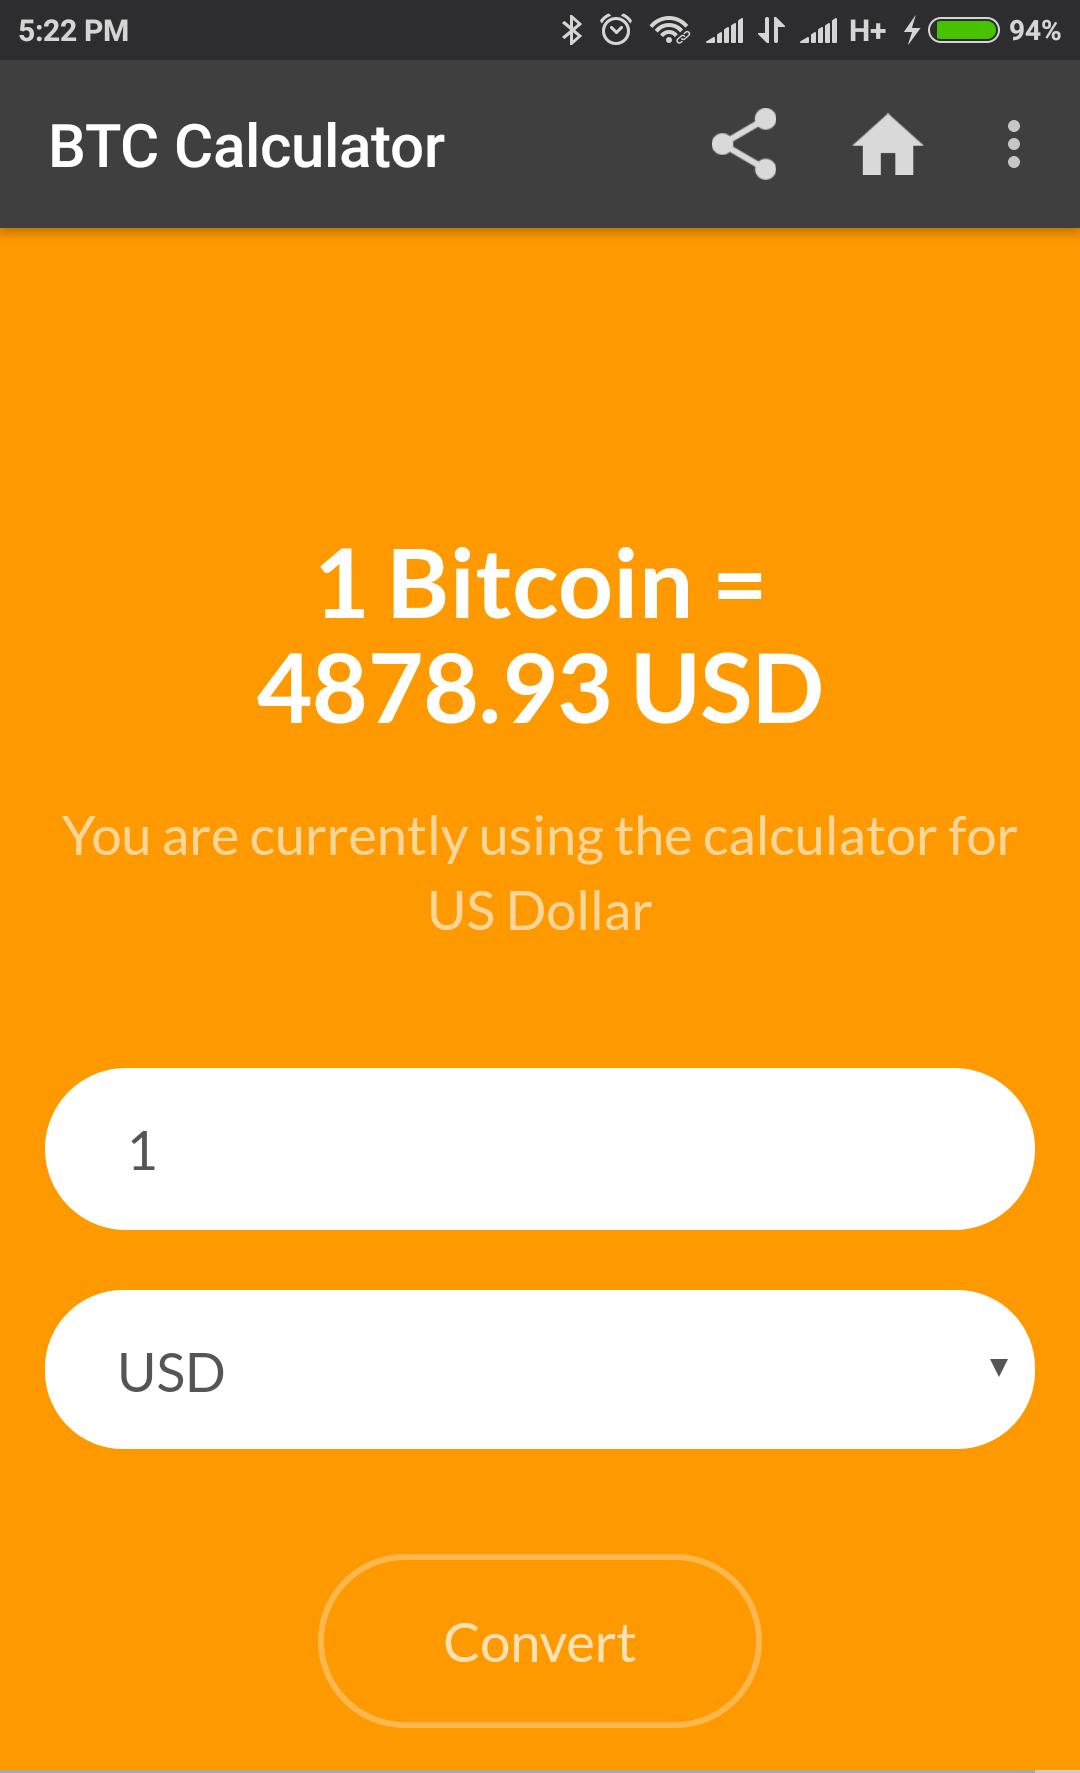 bitcoin converter calculator